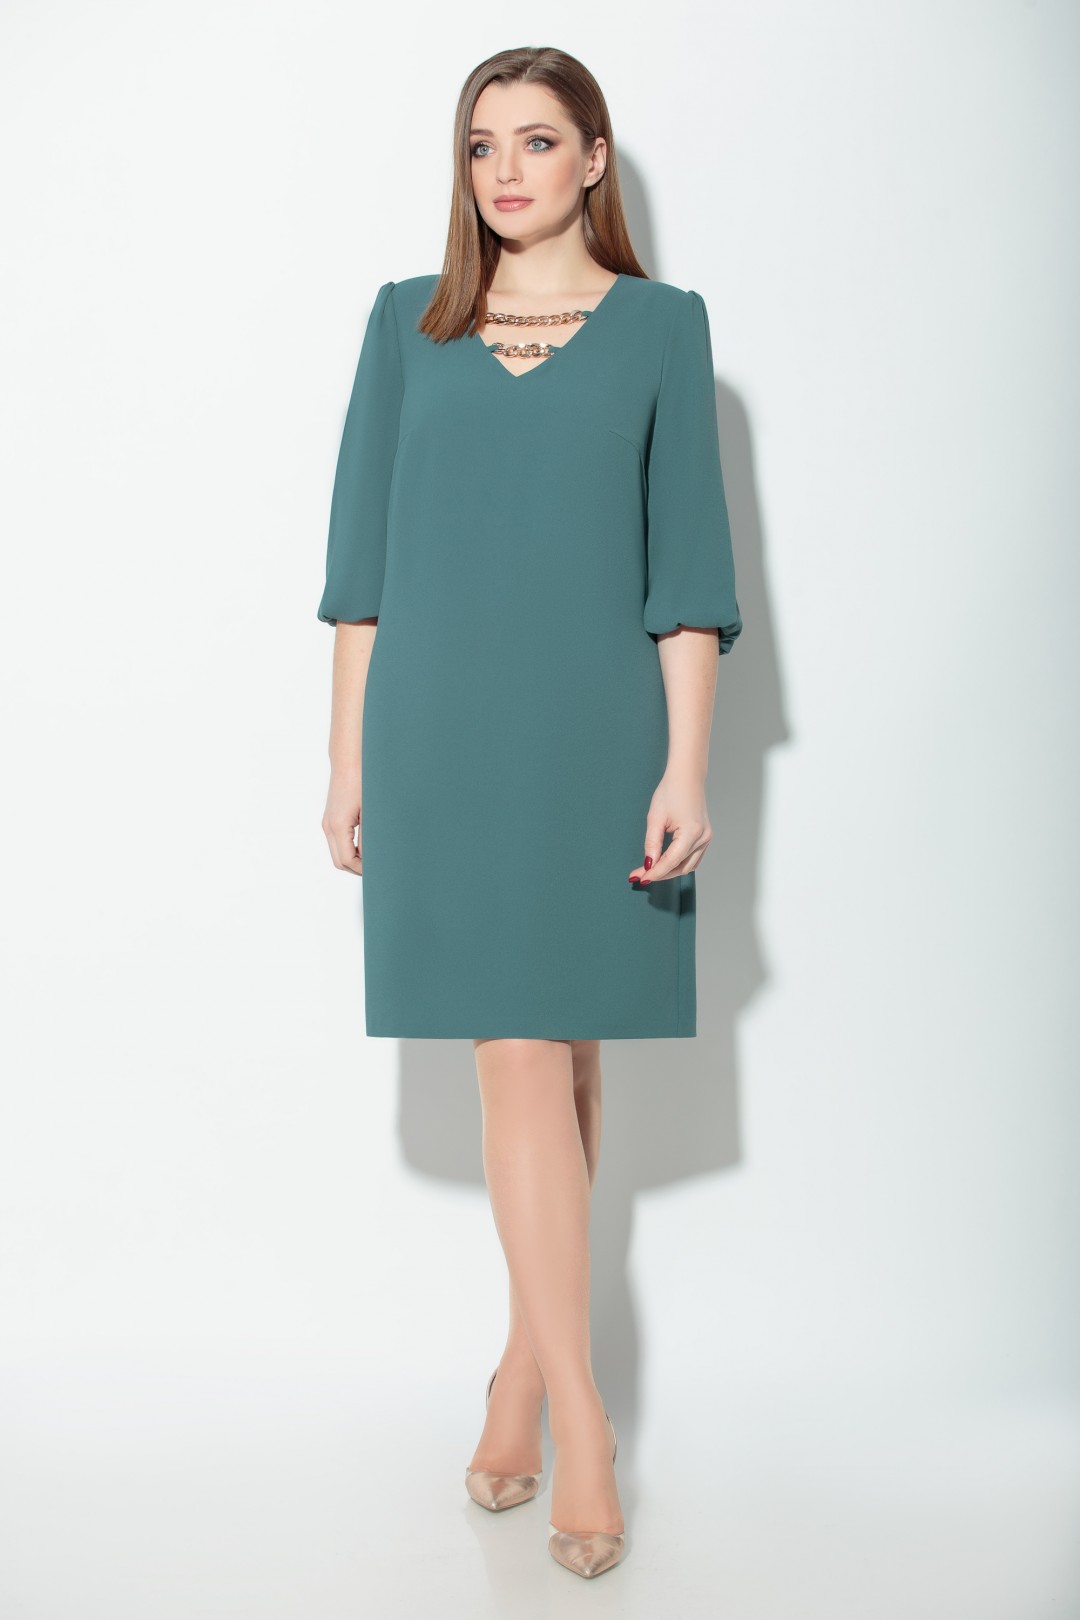 Платье Кокетка и К 825-1 серо-зеленый